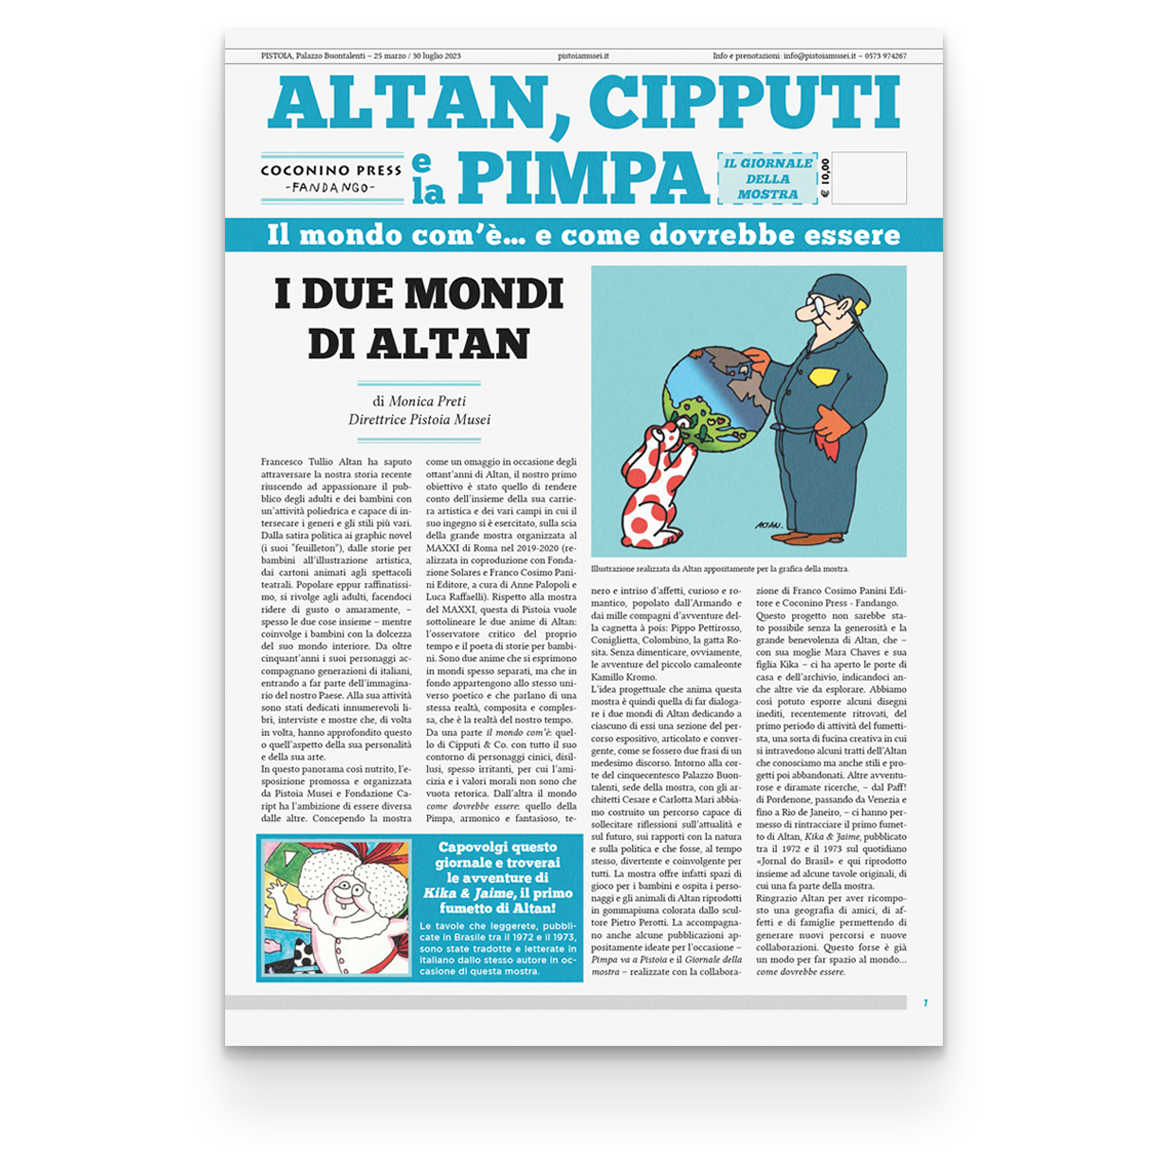 ALTAN. Cipputi e la Pimpa | Giornale della Mostra